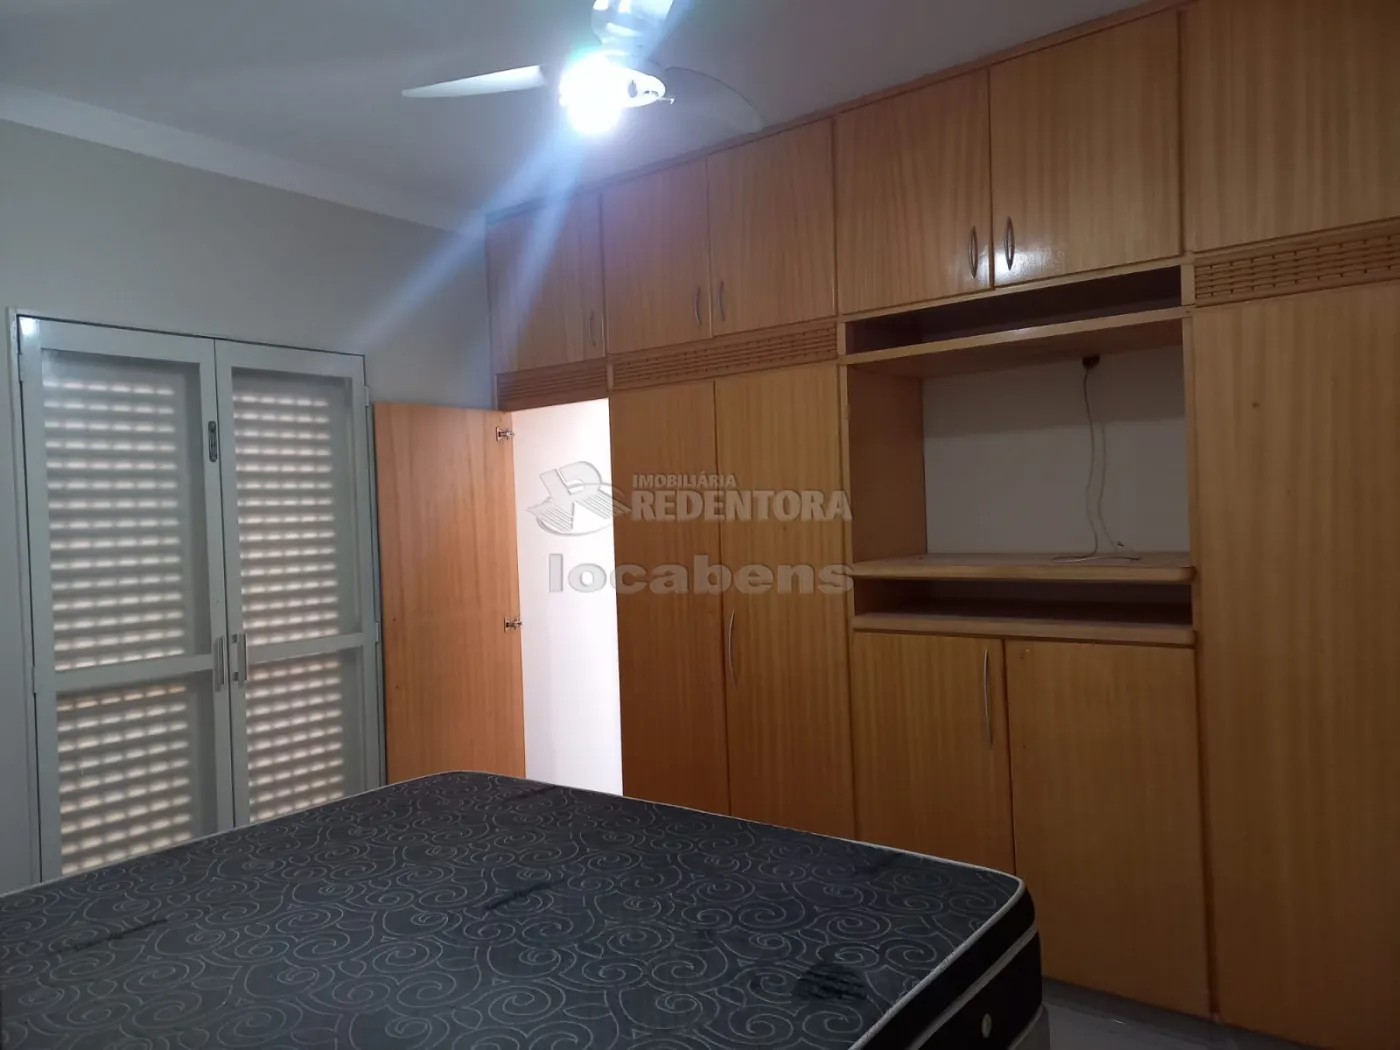 Comprar Casa / Padrão em São José do Rio Preto R$ 265.000,00 - Foto 5